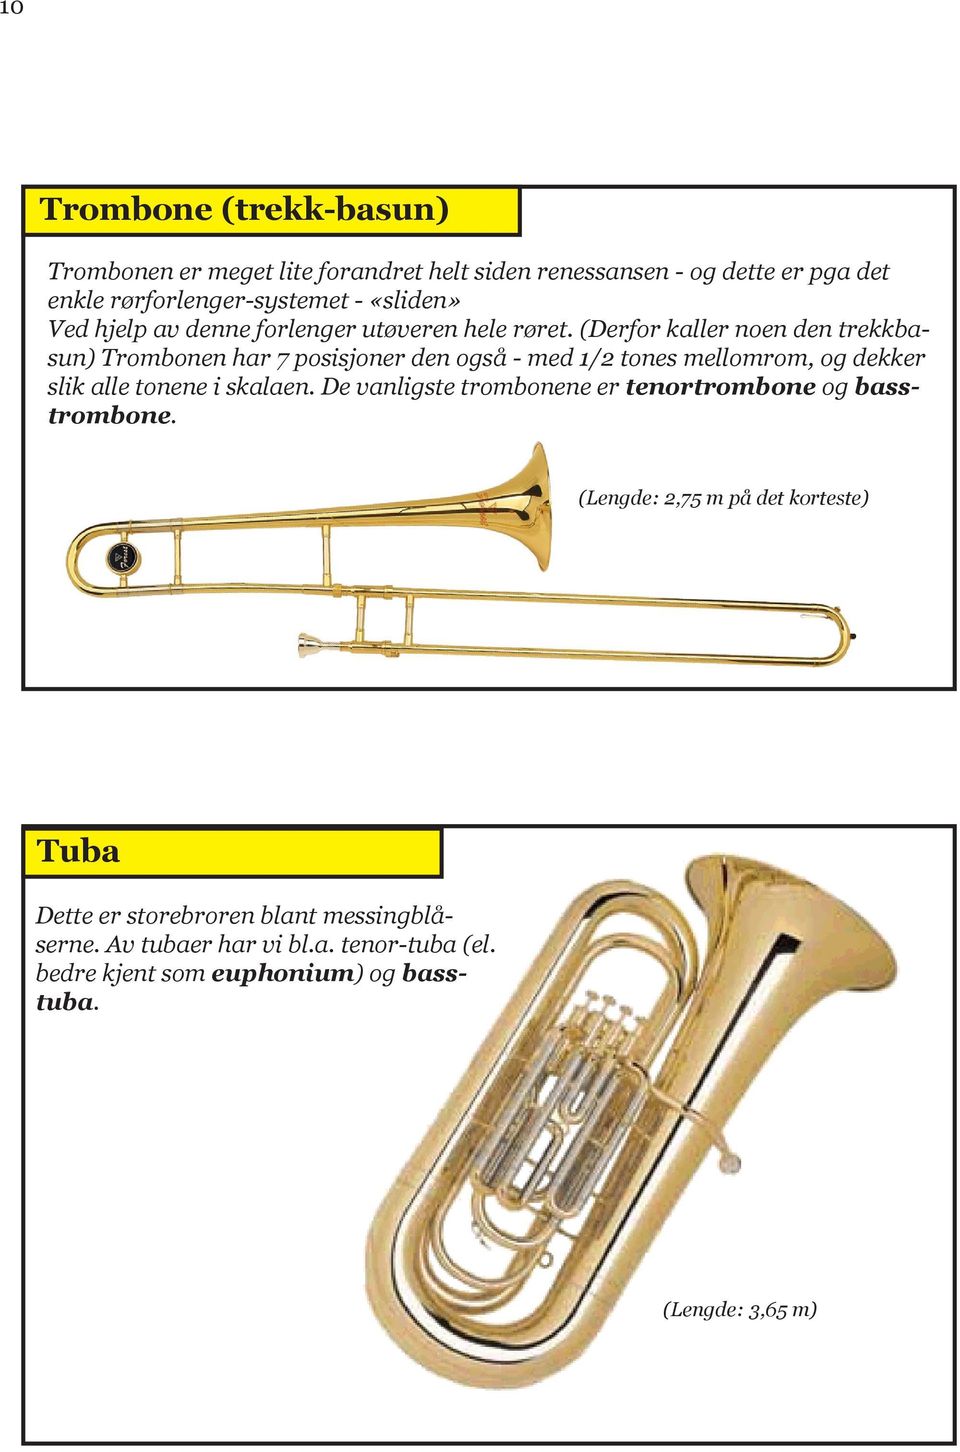 (Derfor kaller noen den trekkbasun) Trombonen har 7 posisjoner den også - med 1/2 tones mellomrom, og dekker slik alle tonene i skalaen.